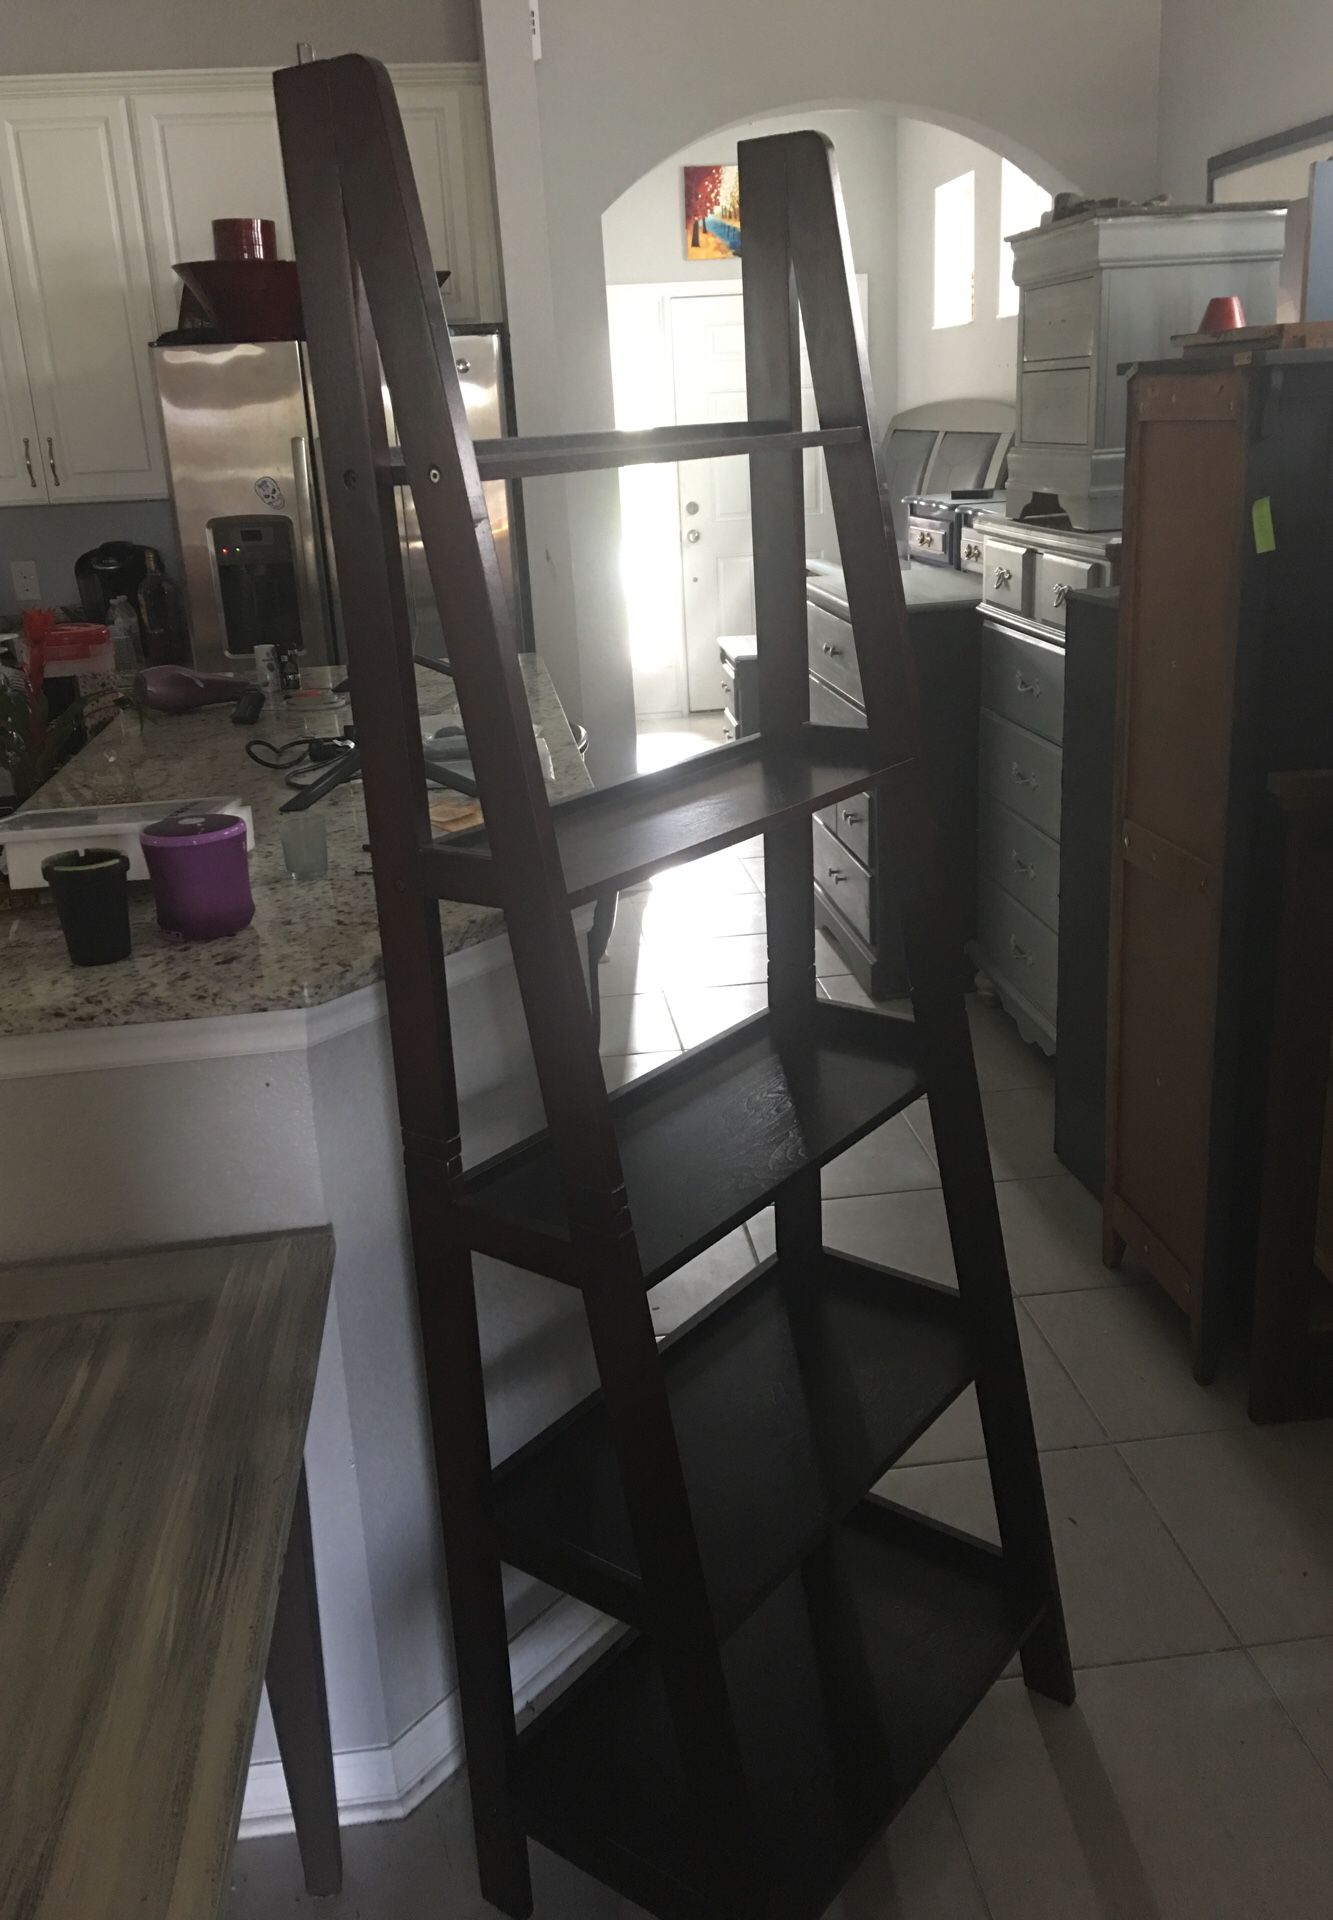 2 ladder shelves